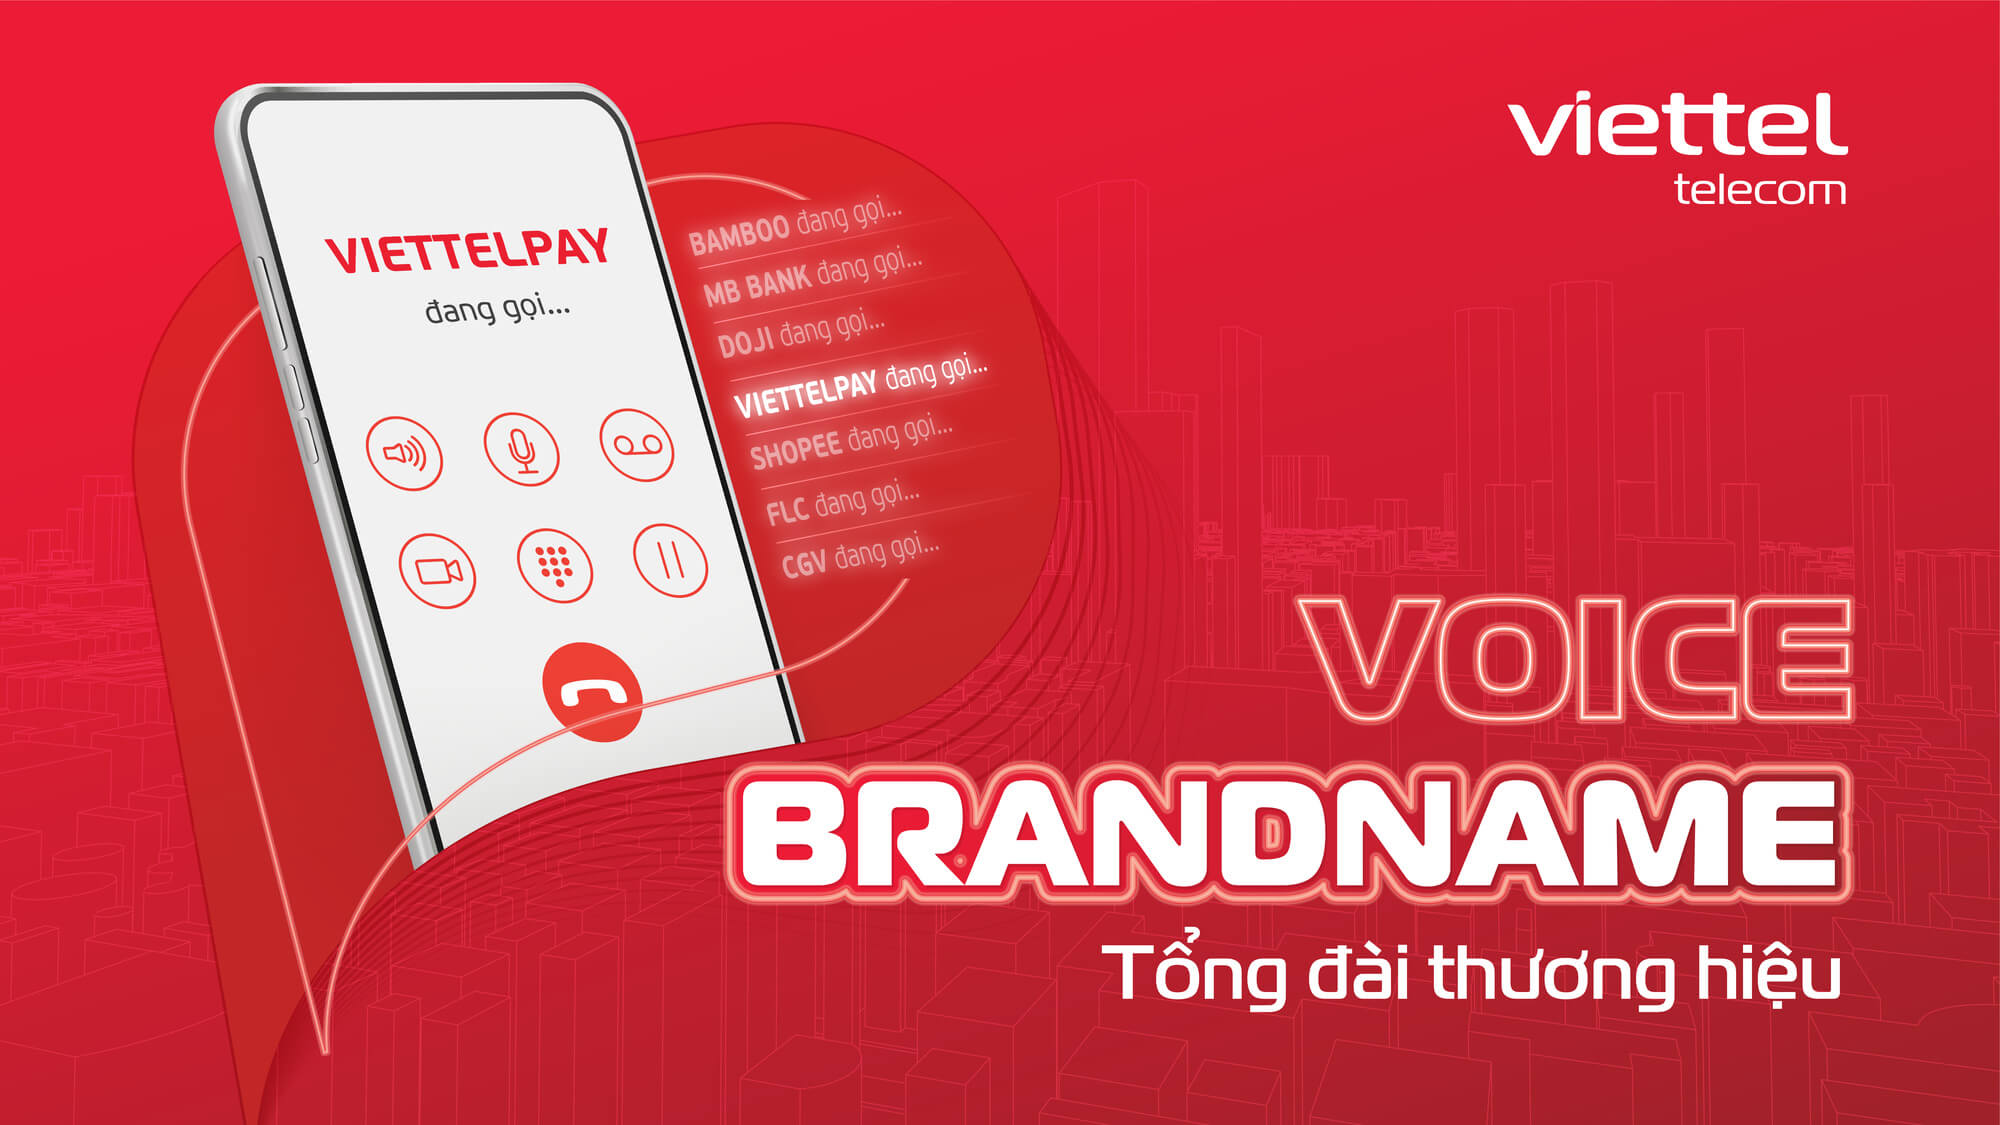 Voice Brandname là gì? Top 7 lợi ích của cuộc gọi thương hiệu